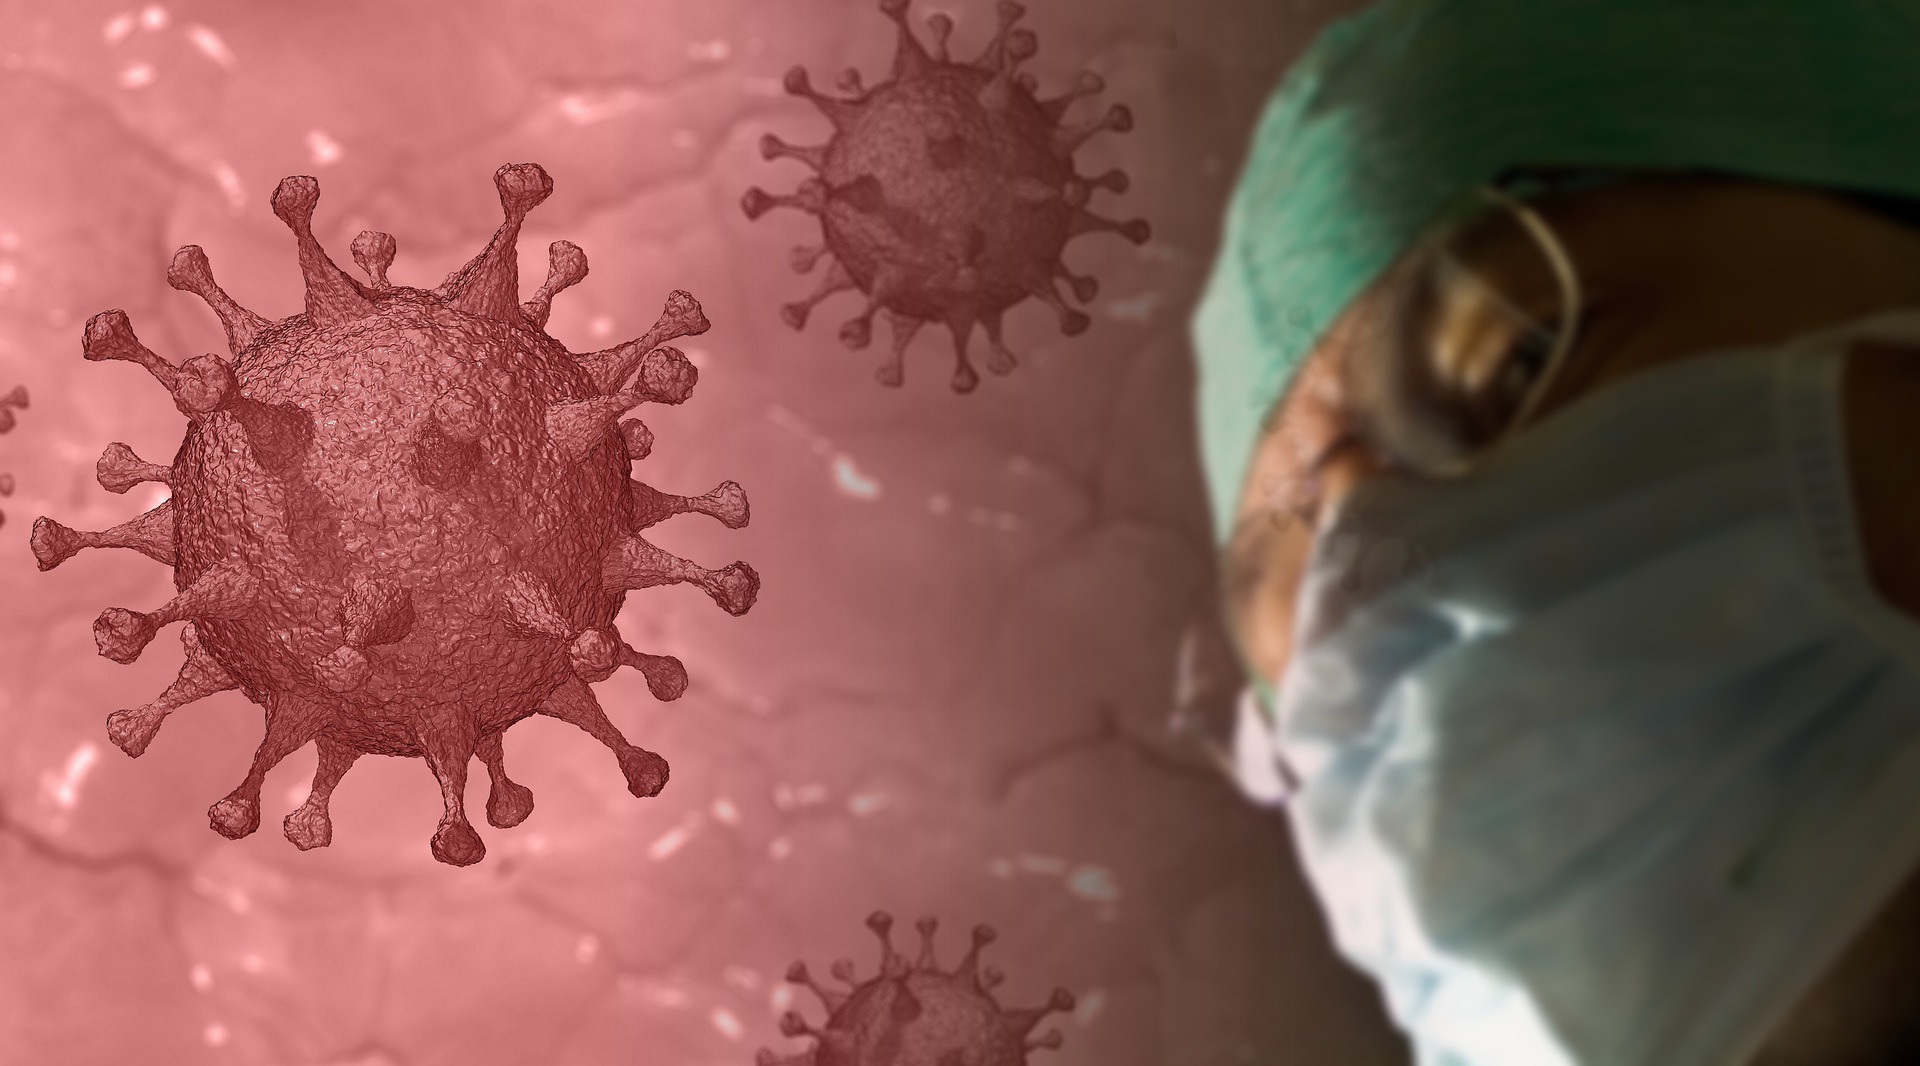 KOVID ODNIO 25 ŽIVOTA Virus potvrđen kod još 388 osoba u Srpskoj